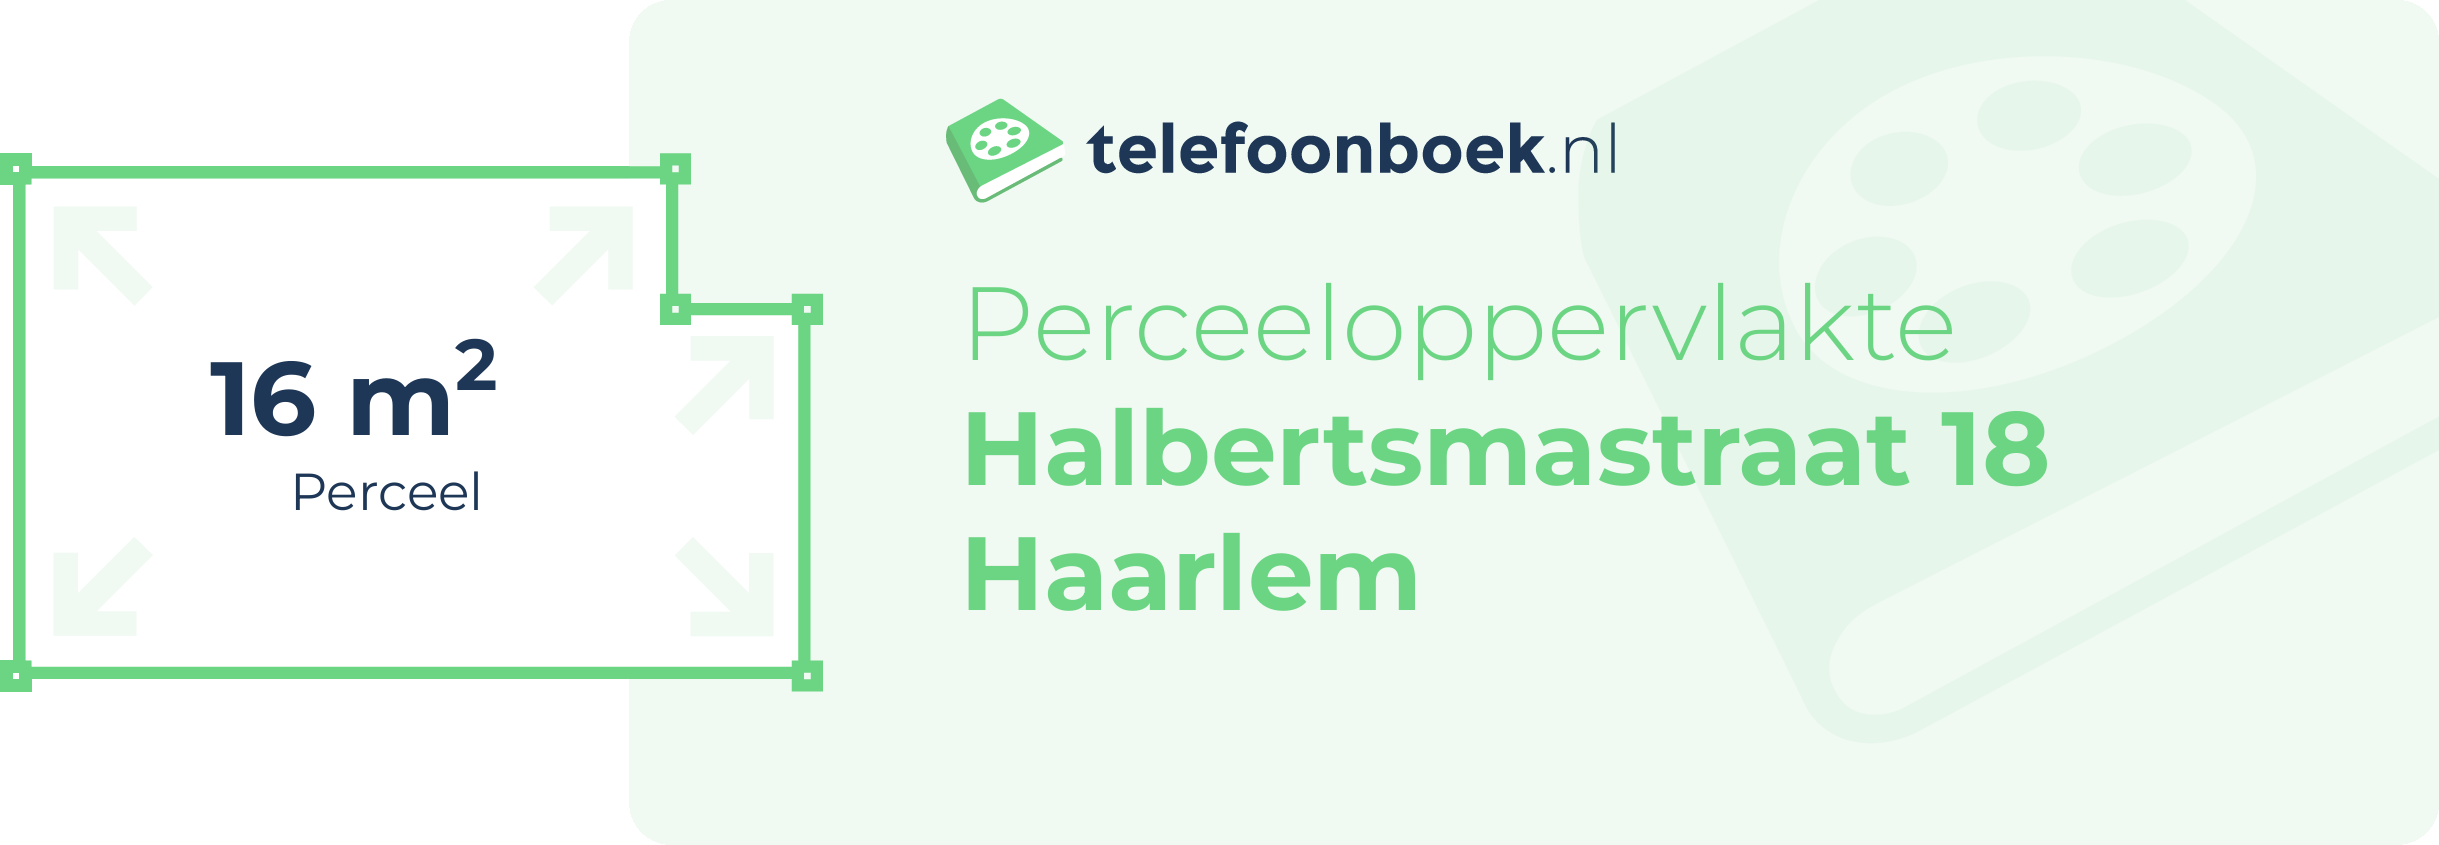 Perceeloppervlakte Halbertsmastraat 18 Haarlem